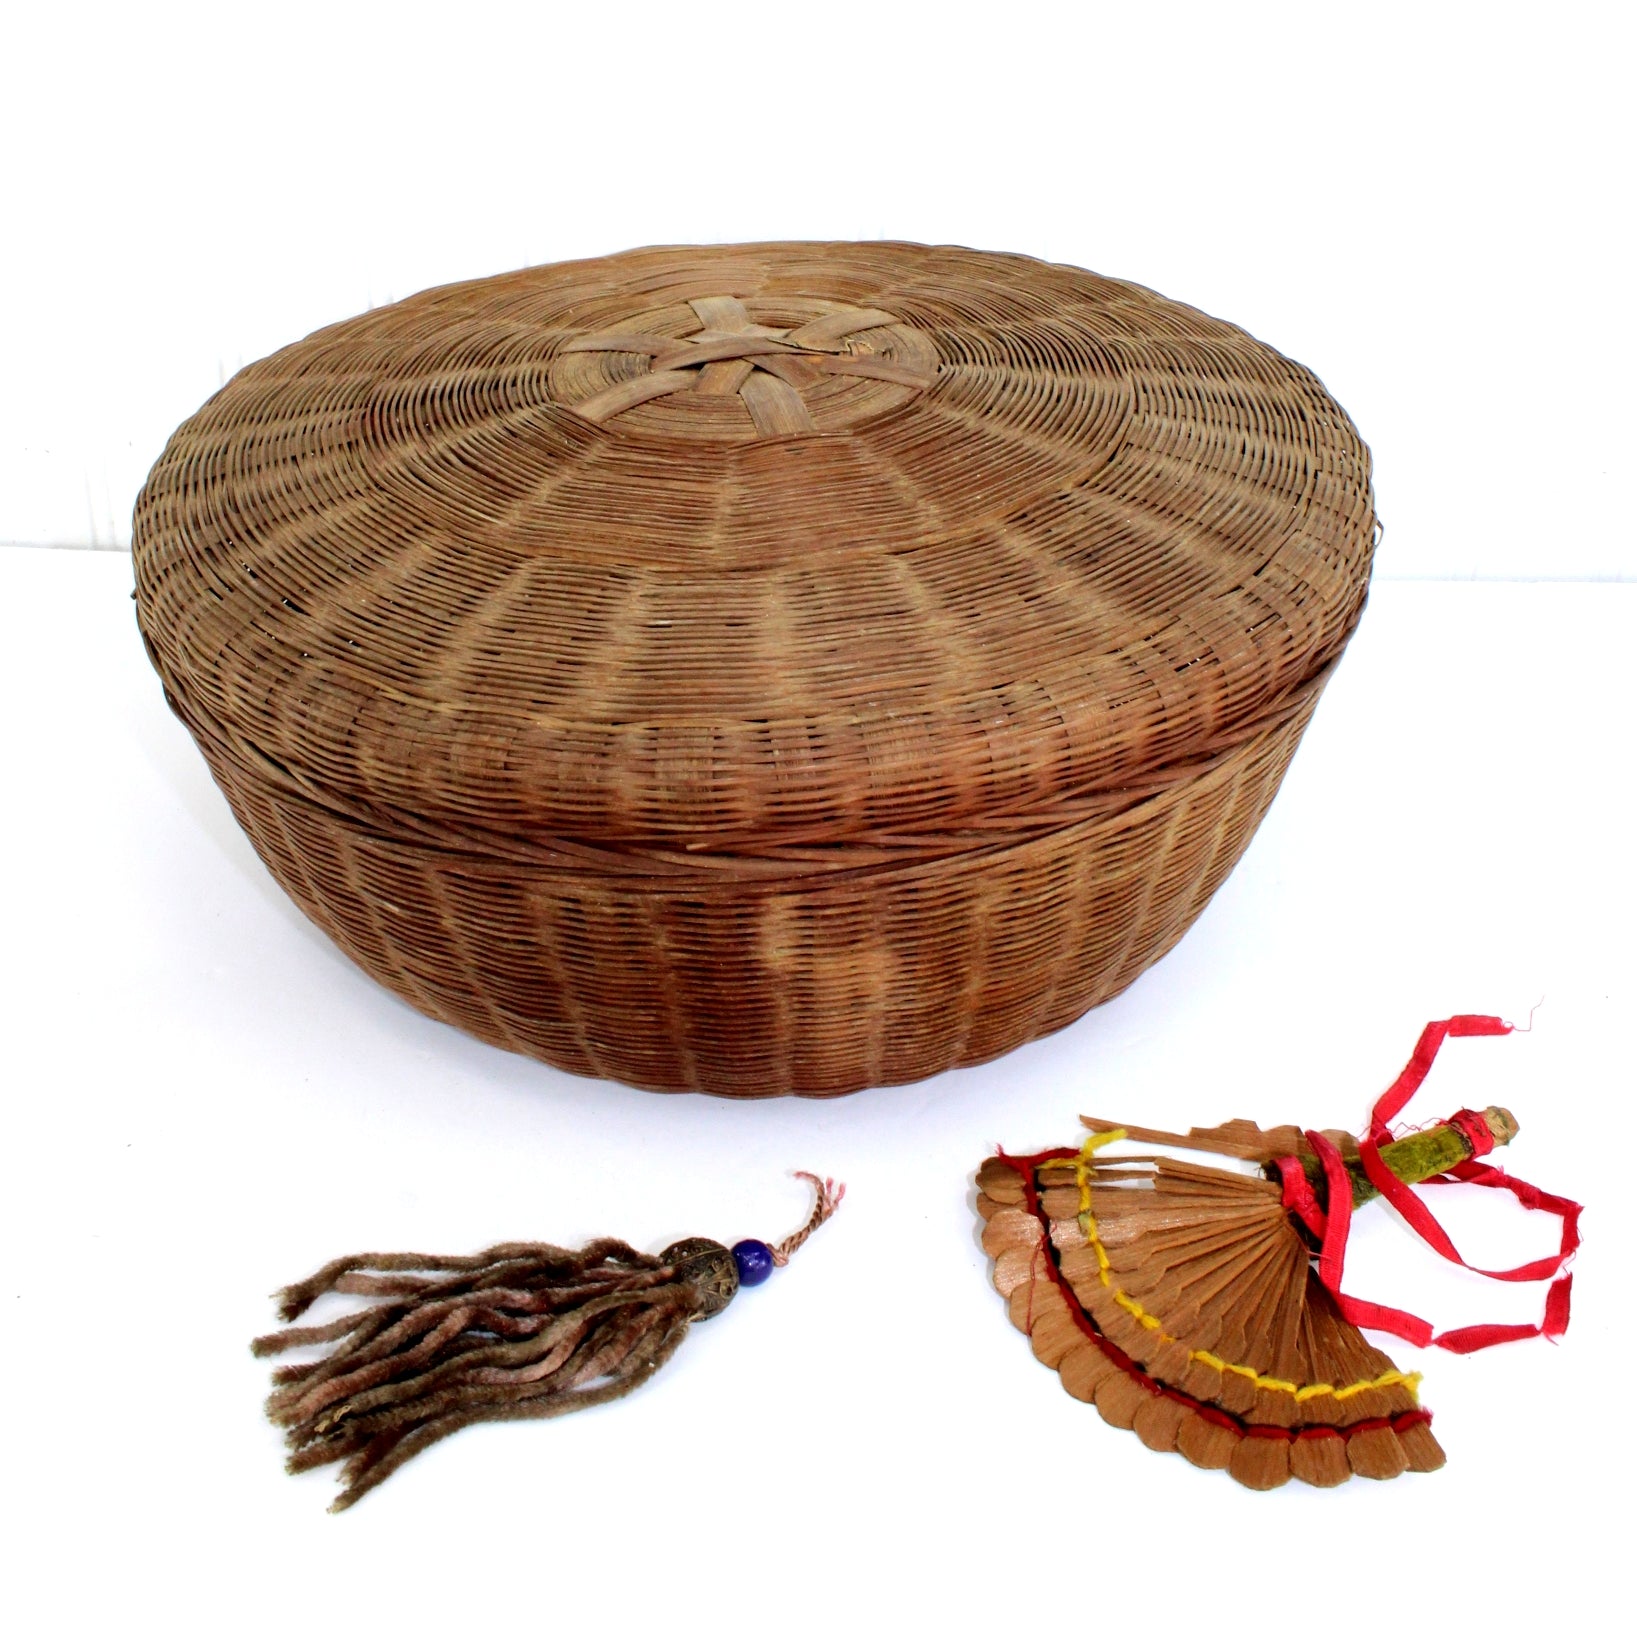 Antique Sewing Basket Chenille Tassel from Estate round basket 12" diameter